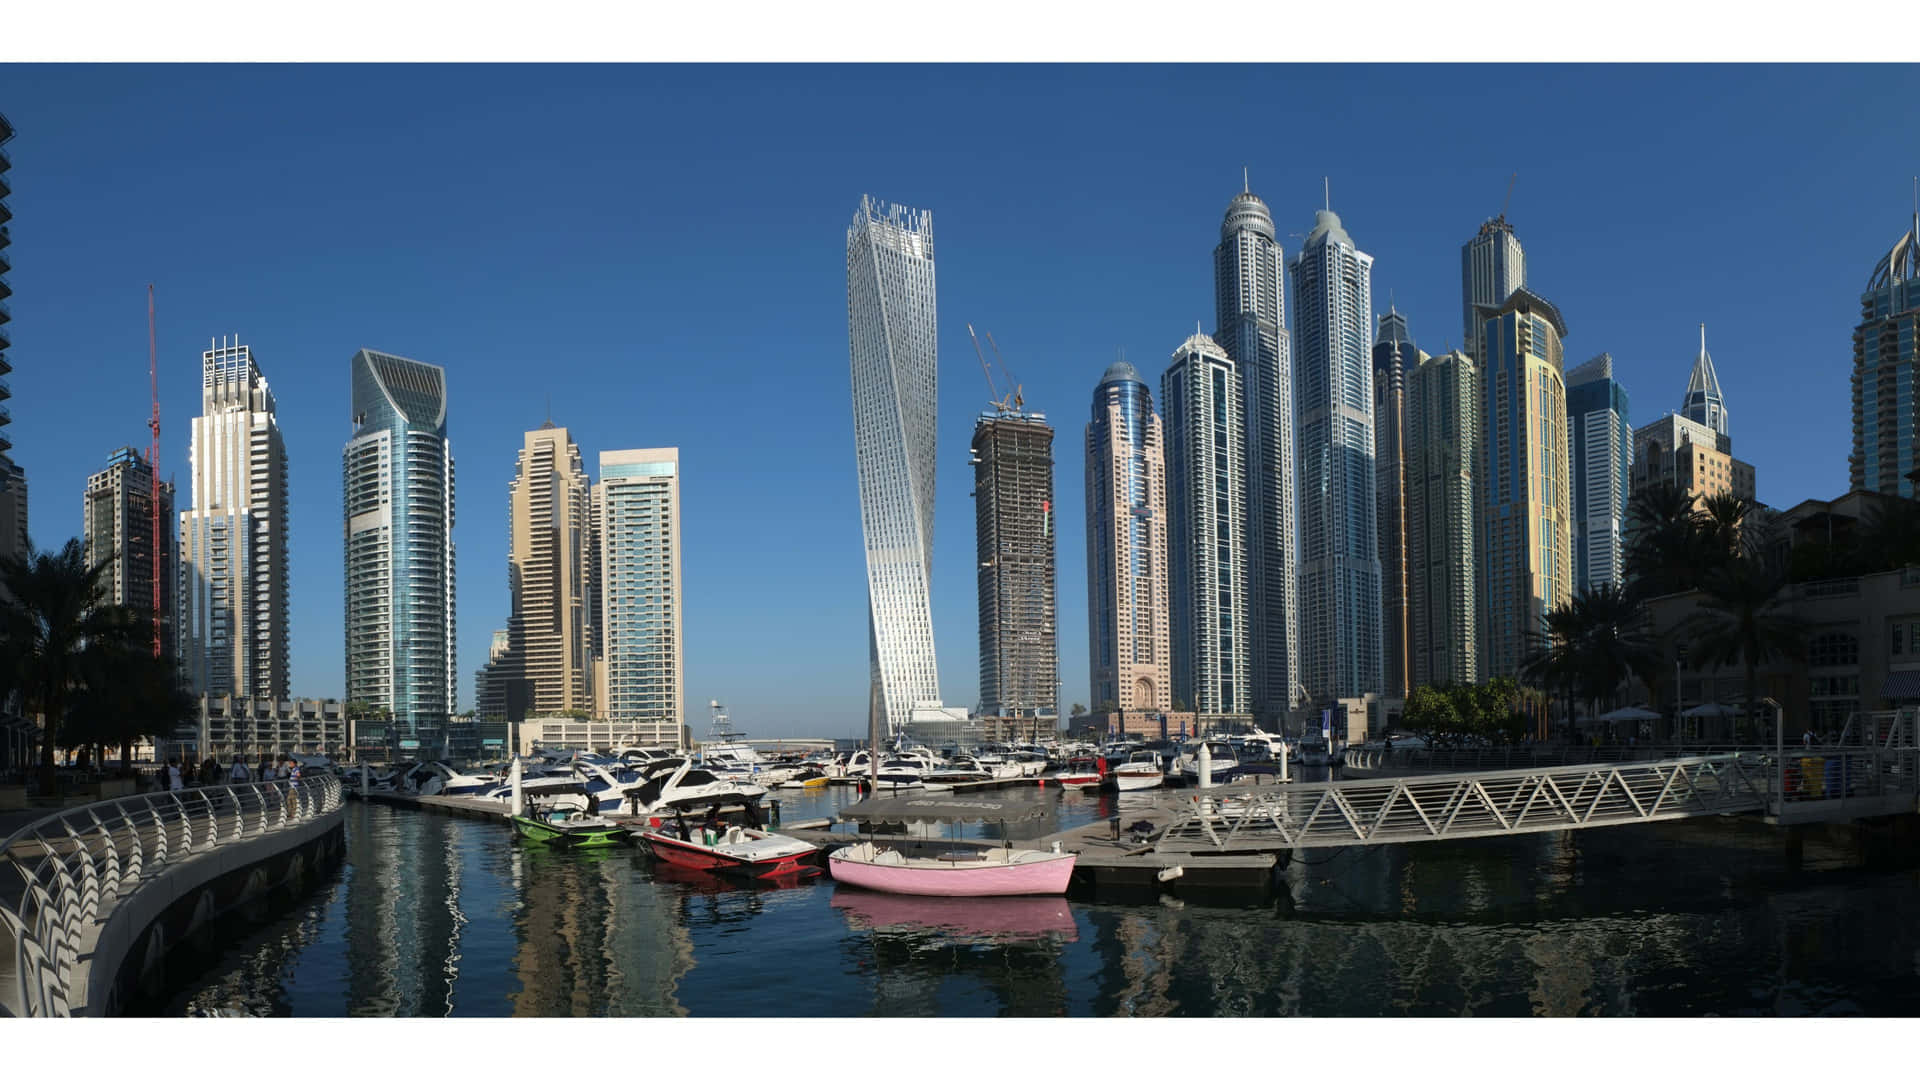 Dubai Marina - A City With Tall Buildings